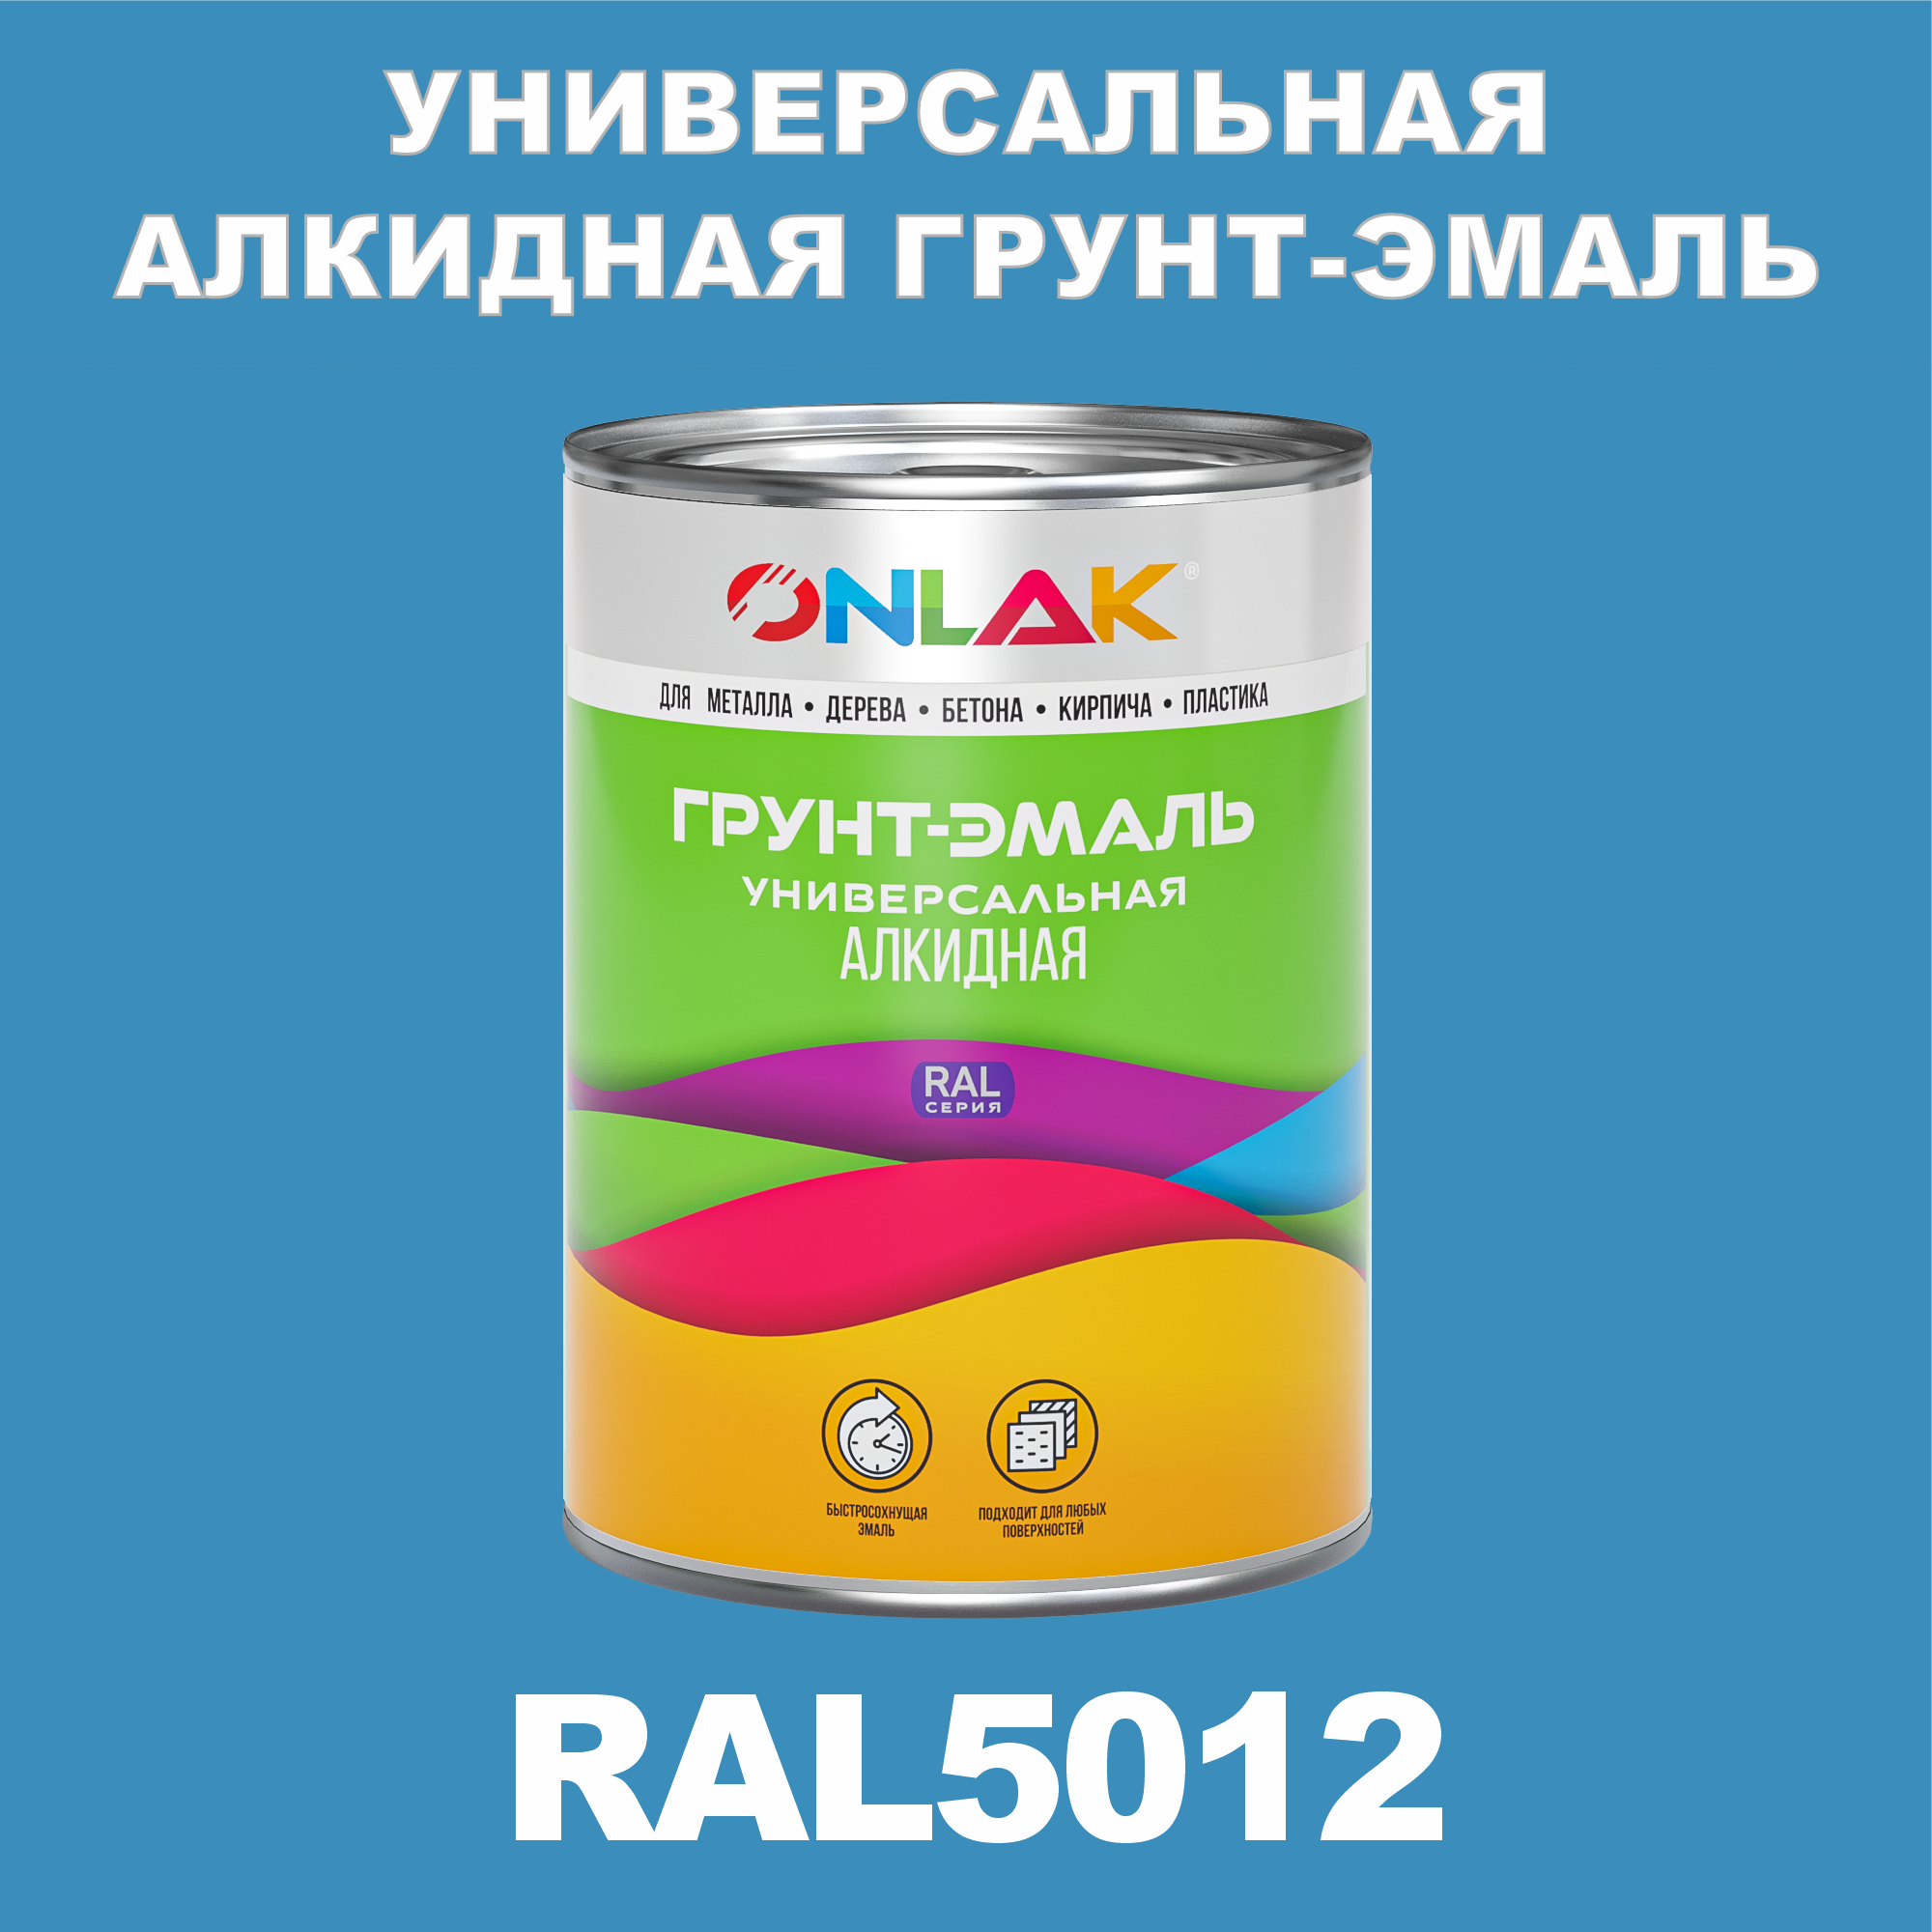 Грунт-эмаль ONLAK 1К RAL5012 антикоррозионная алкидная по металлу по ржавчине 1 кг грунт эмаль престиж по ржавчине алкидная зеленая 1 9 кг